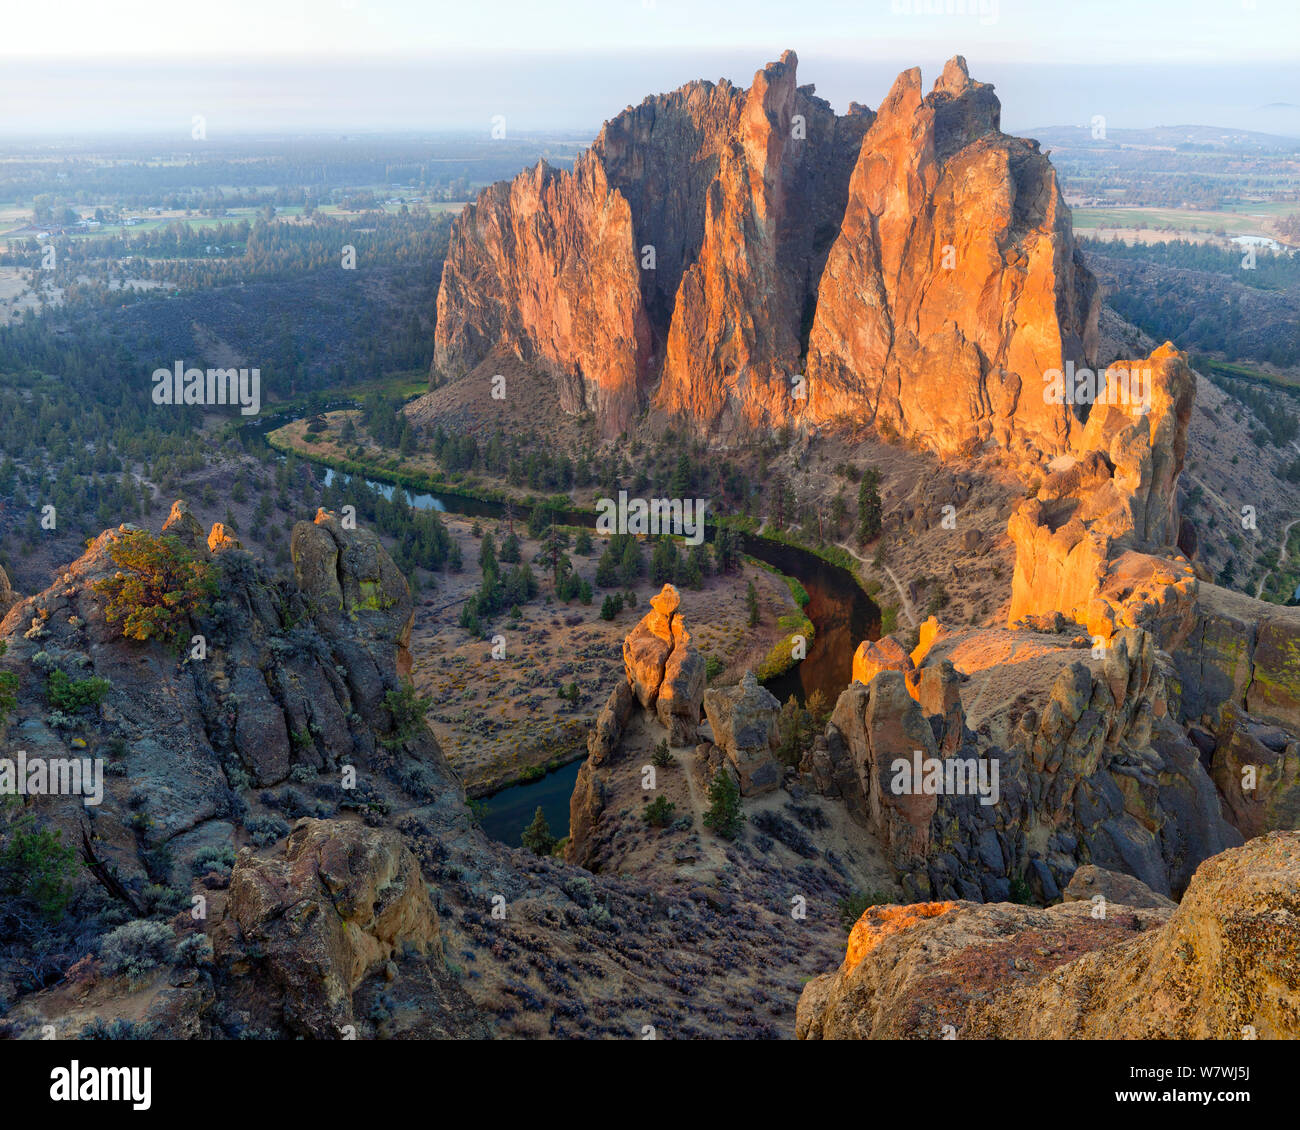 Smith Rock, a popular rock climbing destination, in Smith Rock State Park, Oregon, USA. Stock Photo